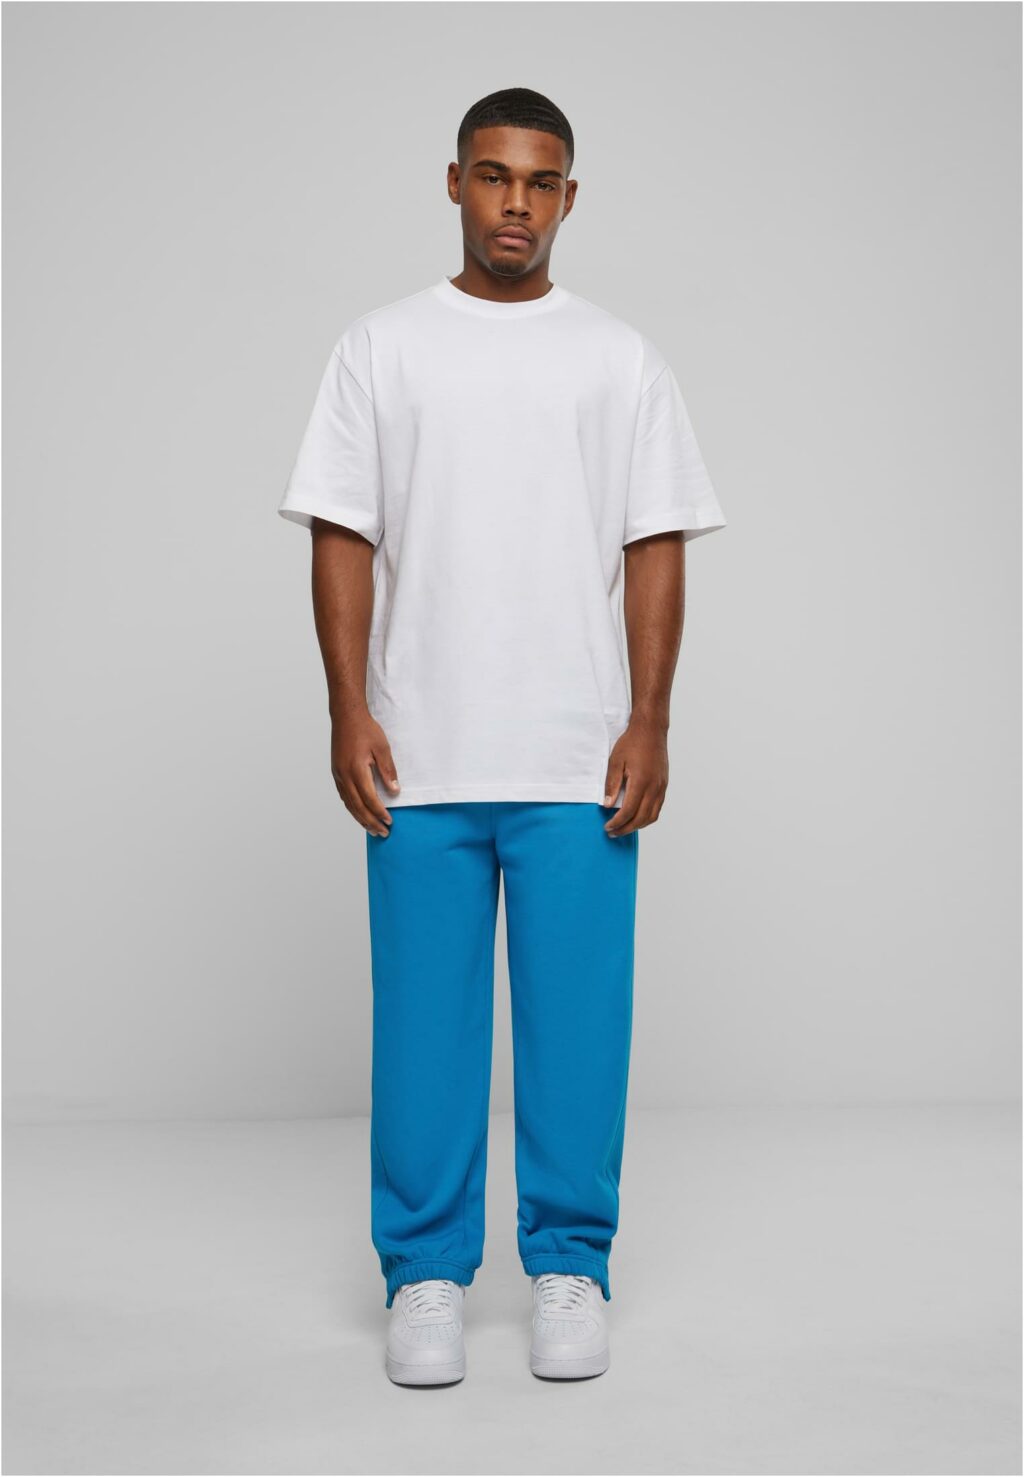 Urban Classics Sweatpants turquoise TB014B